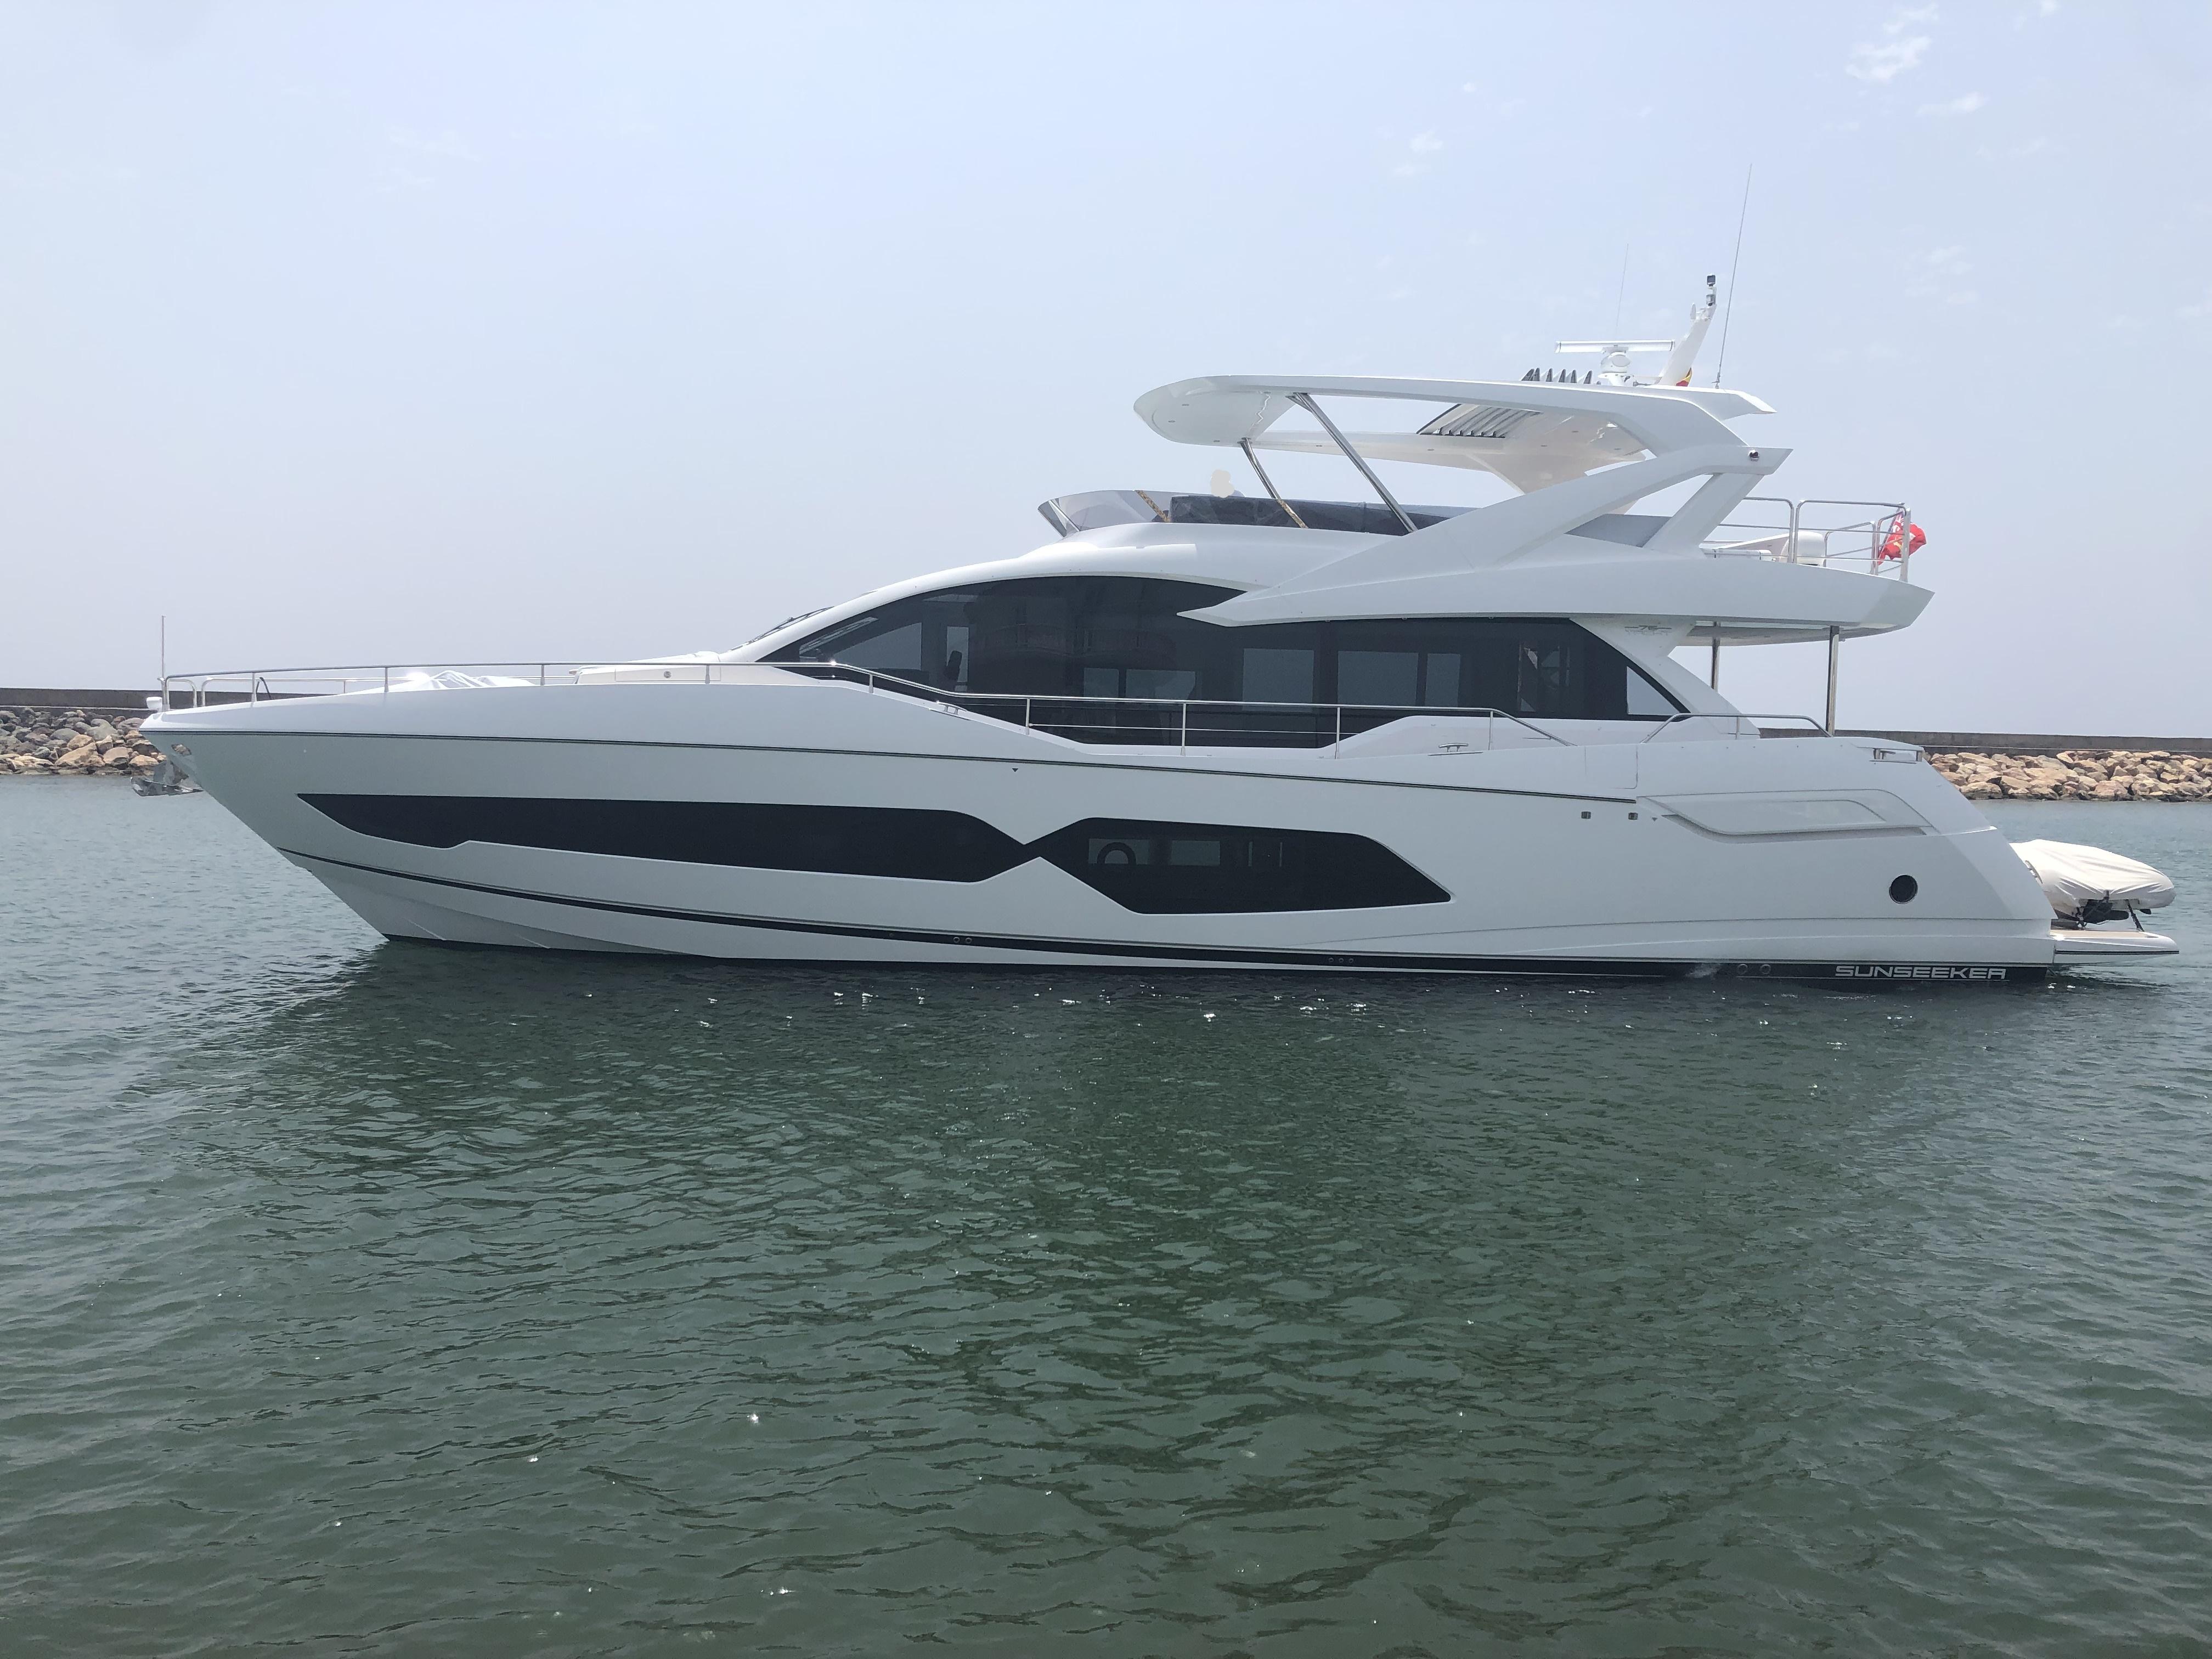 2019 Sunseeker 76 Yacht